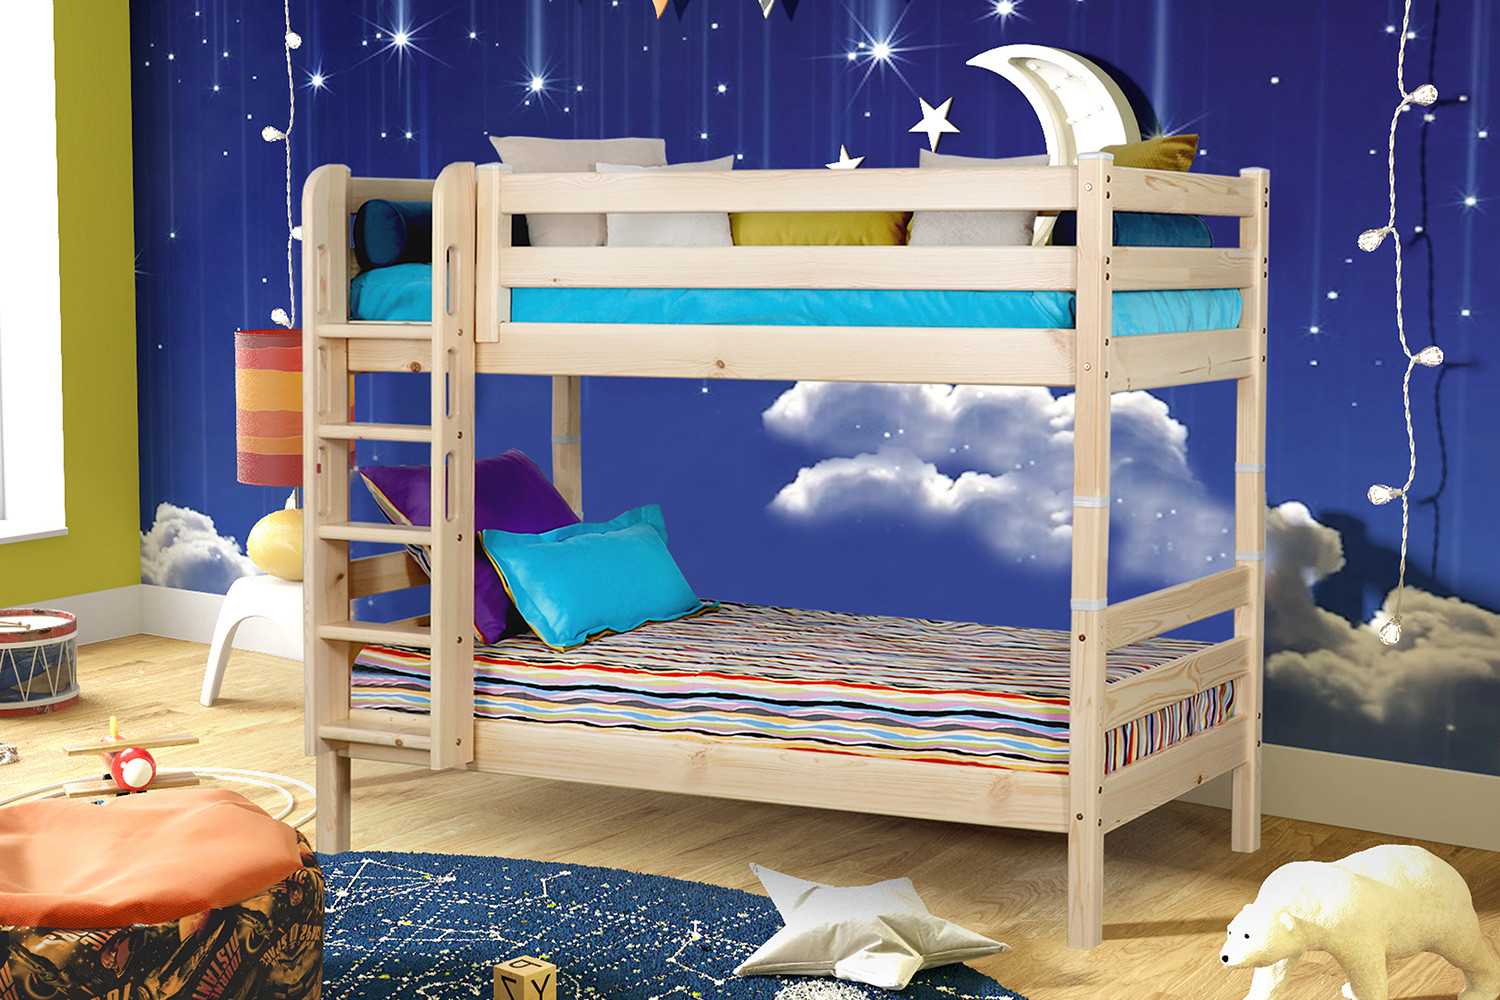 Двухъярусная кровать для взрослых и детей: плюсы и минусы, разновидности конструкций и функционала, размеры, стили, материал изготовления, как выбрать